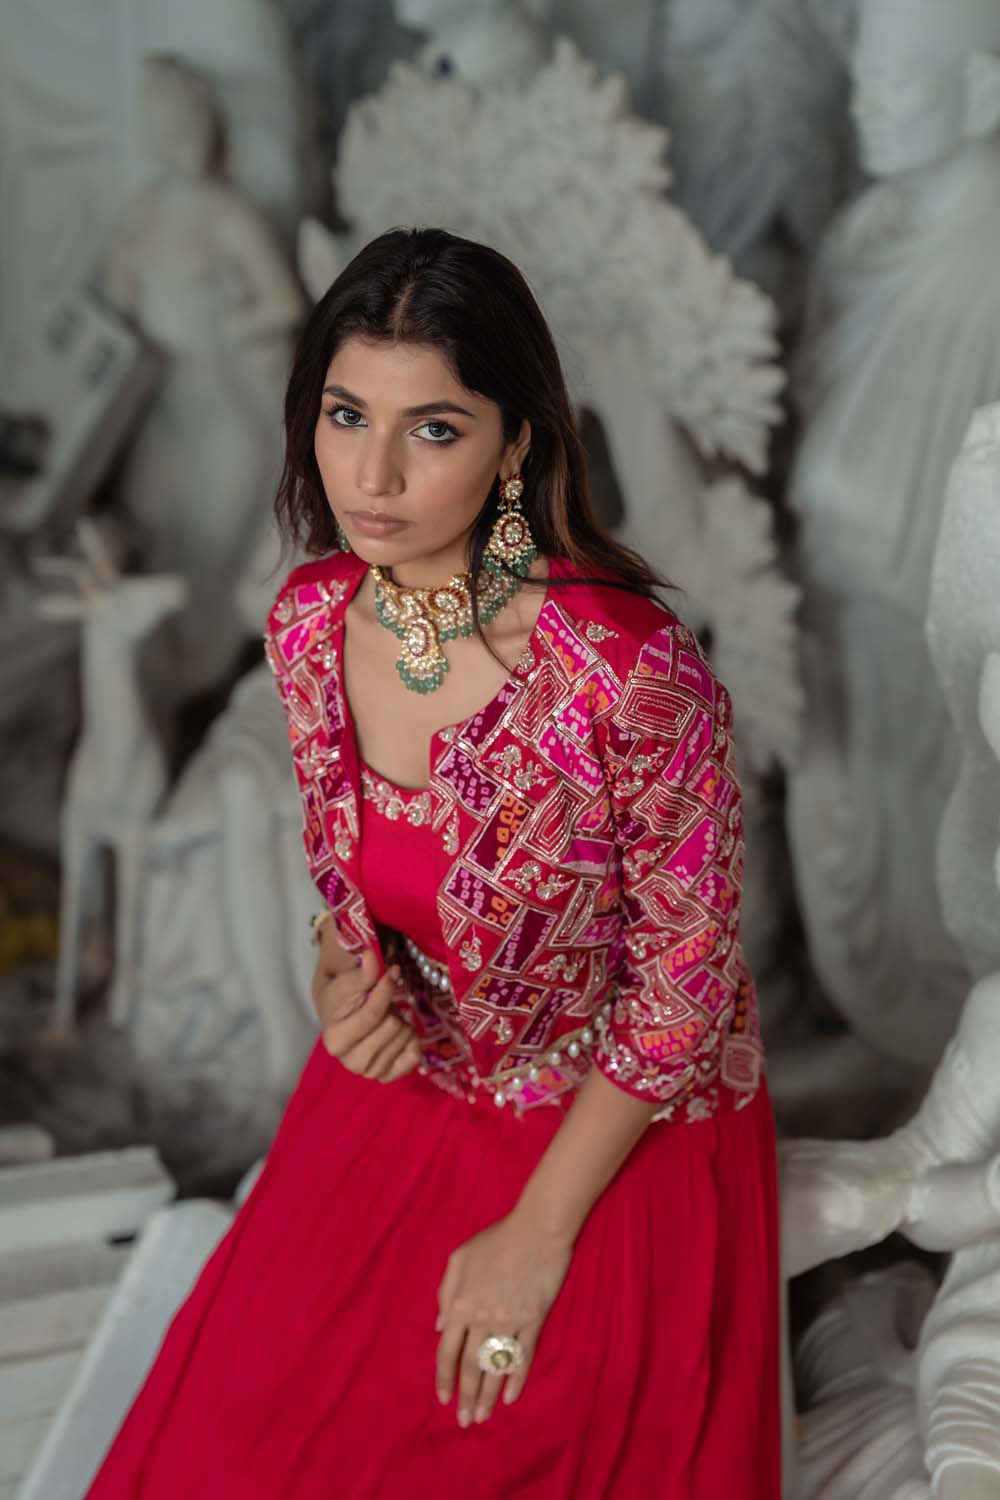 Buy Magenta Pink Floral Lehenga Blouse With Koti Jacket, Indian Wedding  Mehendi Reception Bridesmaids Party Wear Dress, Stitched Lehenga Choli  Online in India - Etsy